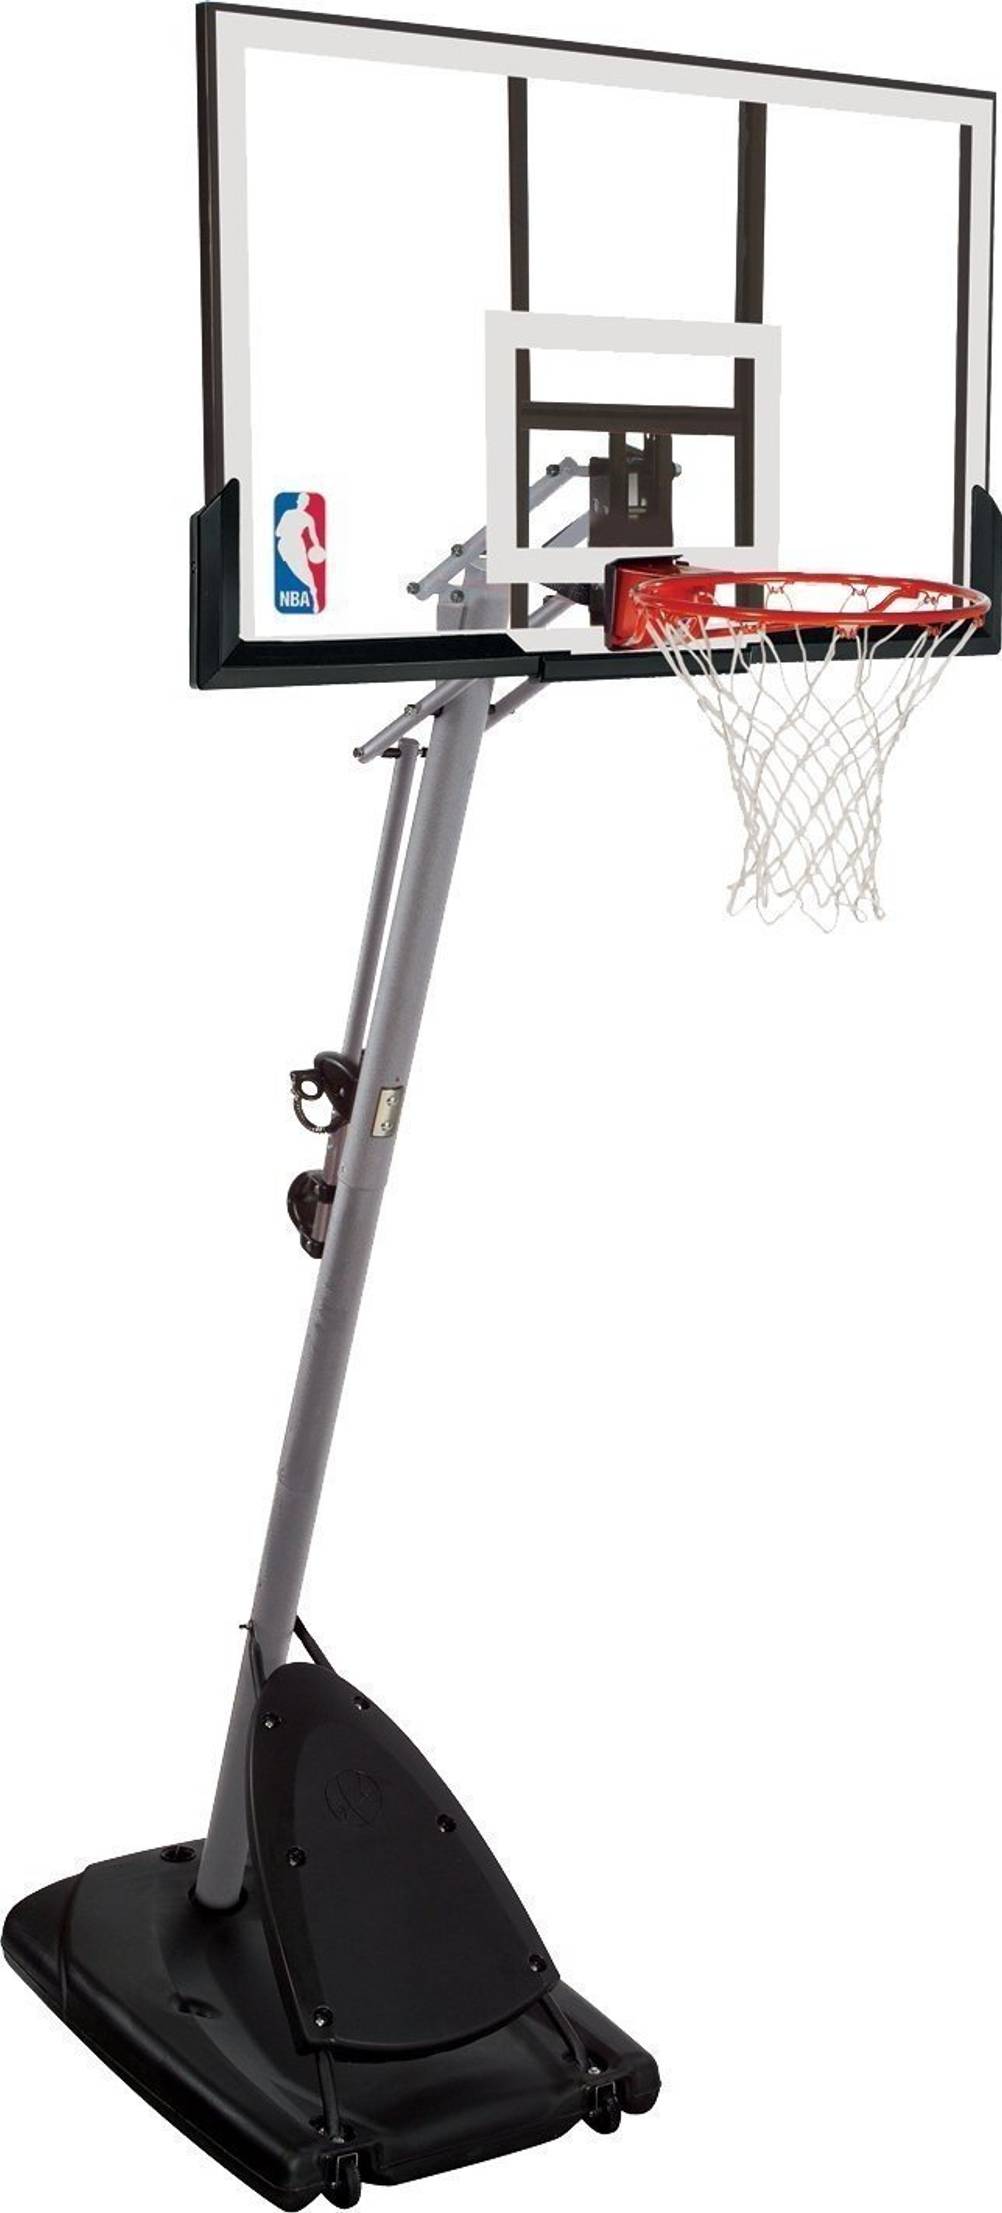 Basketballkorb an Stange befestigen